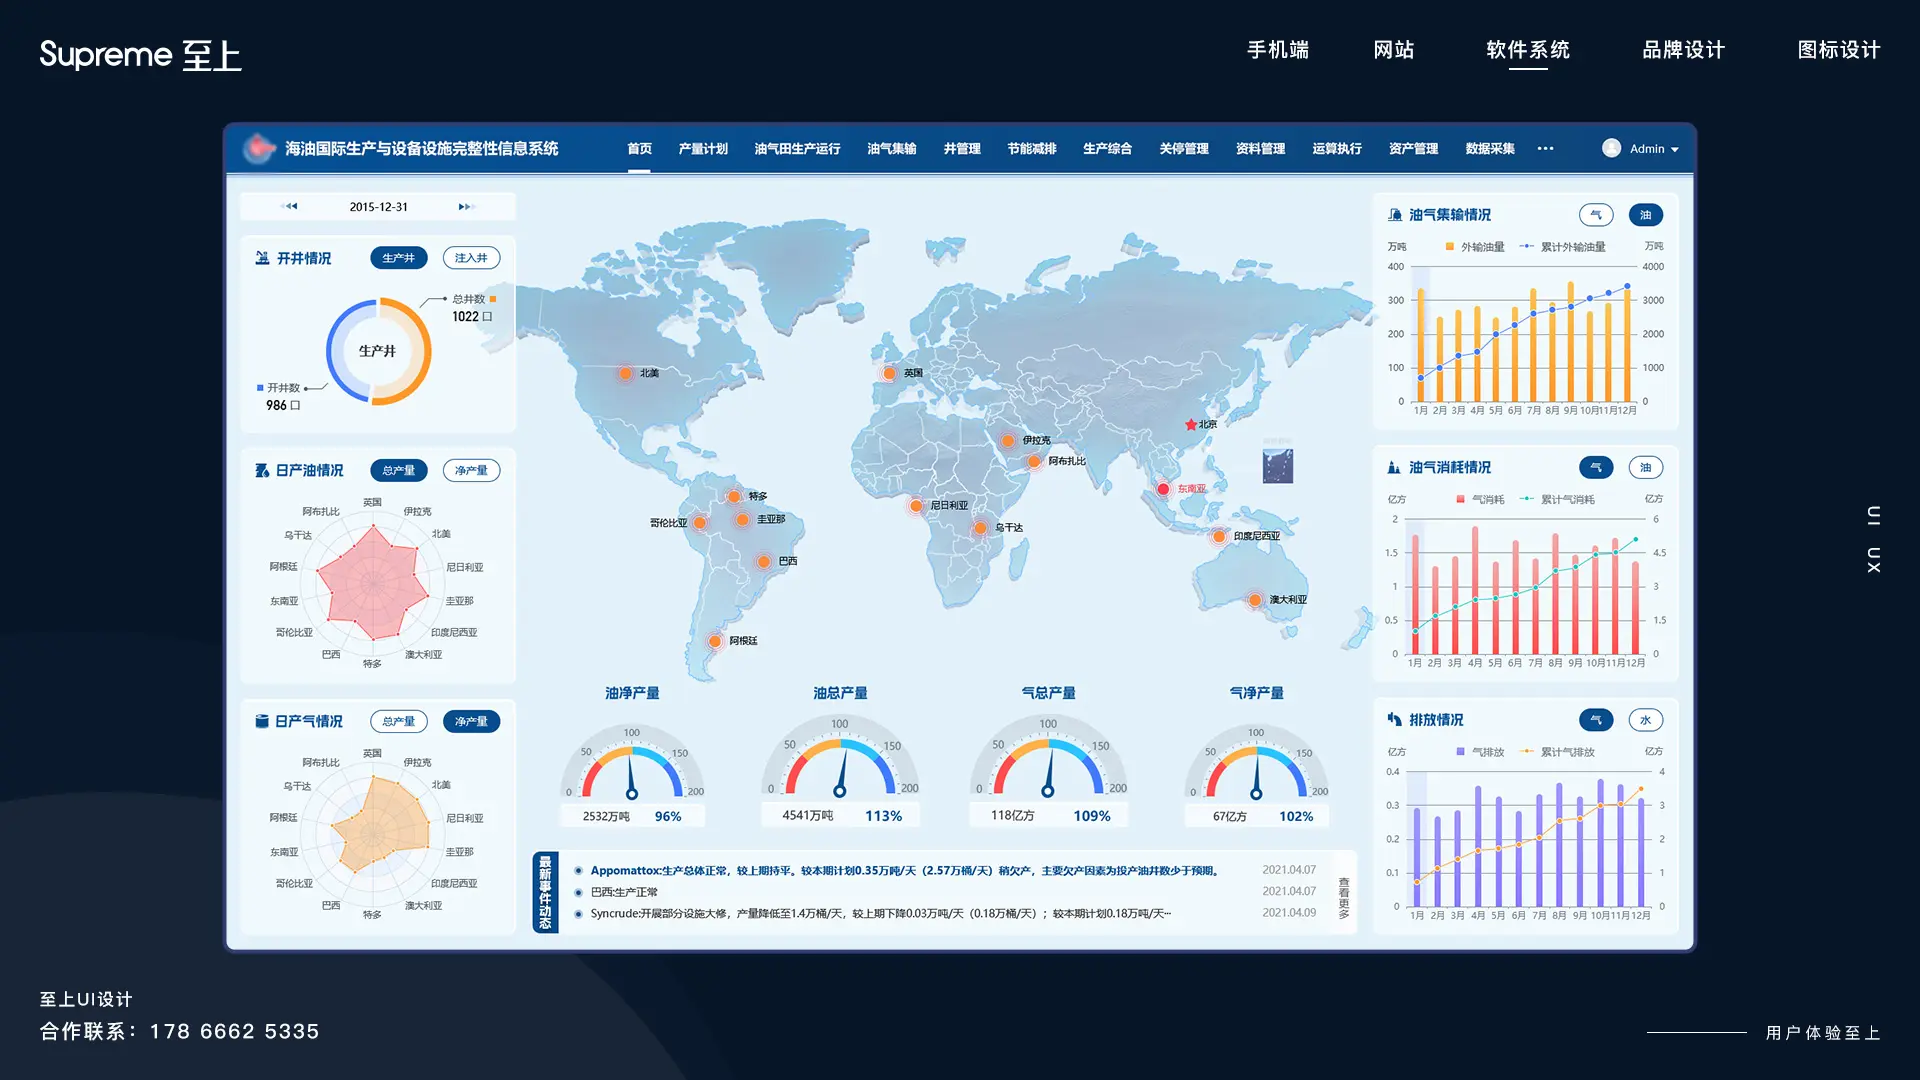 石油生产信息系统大屏可视化UI设计浅色